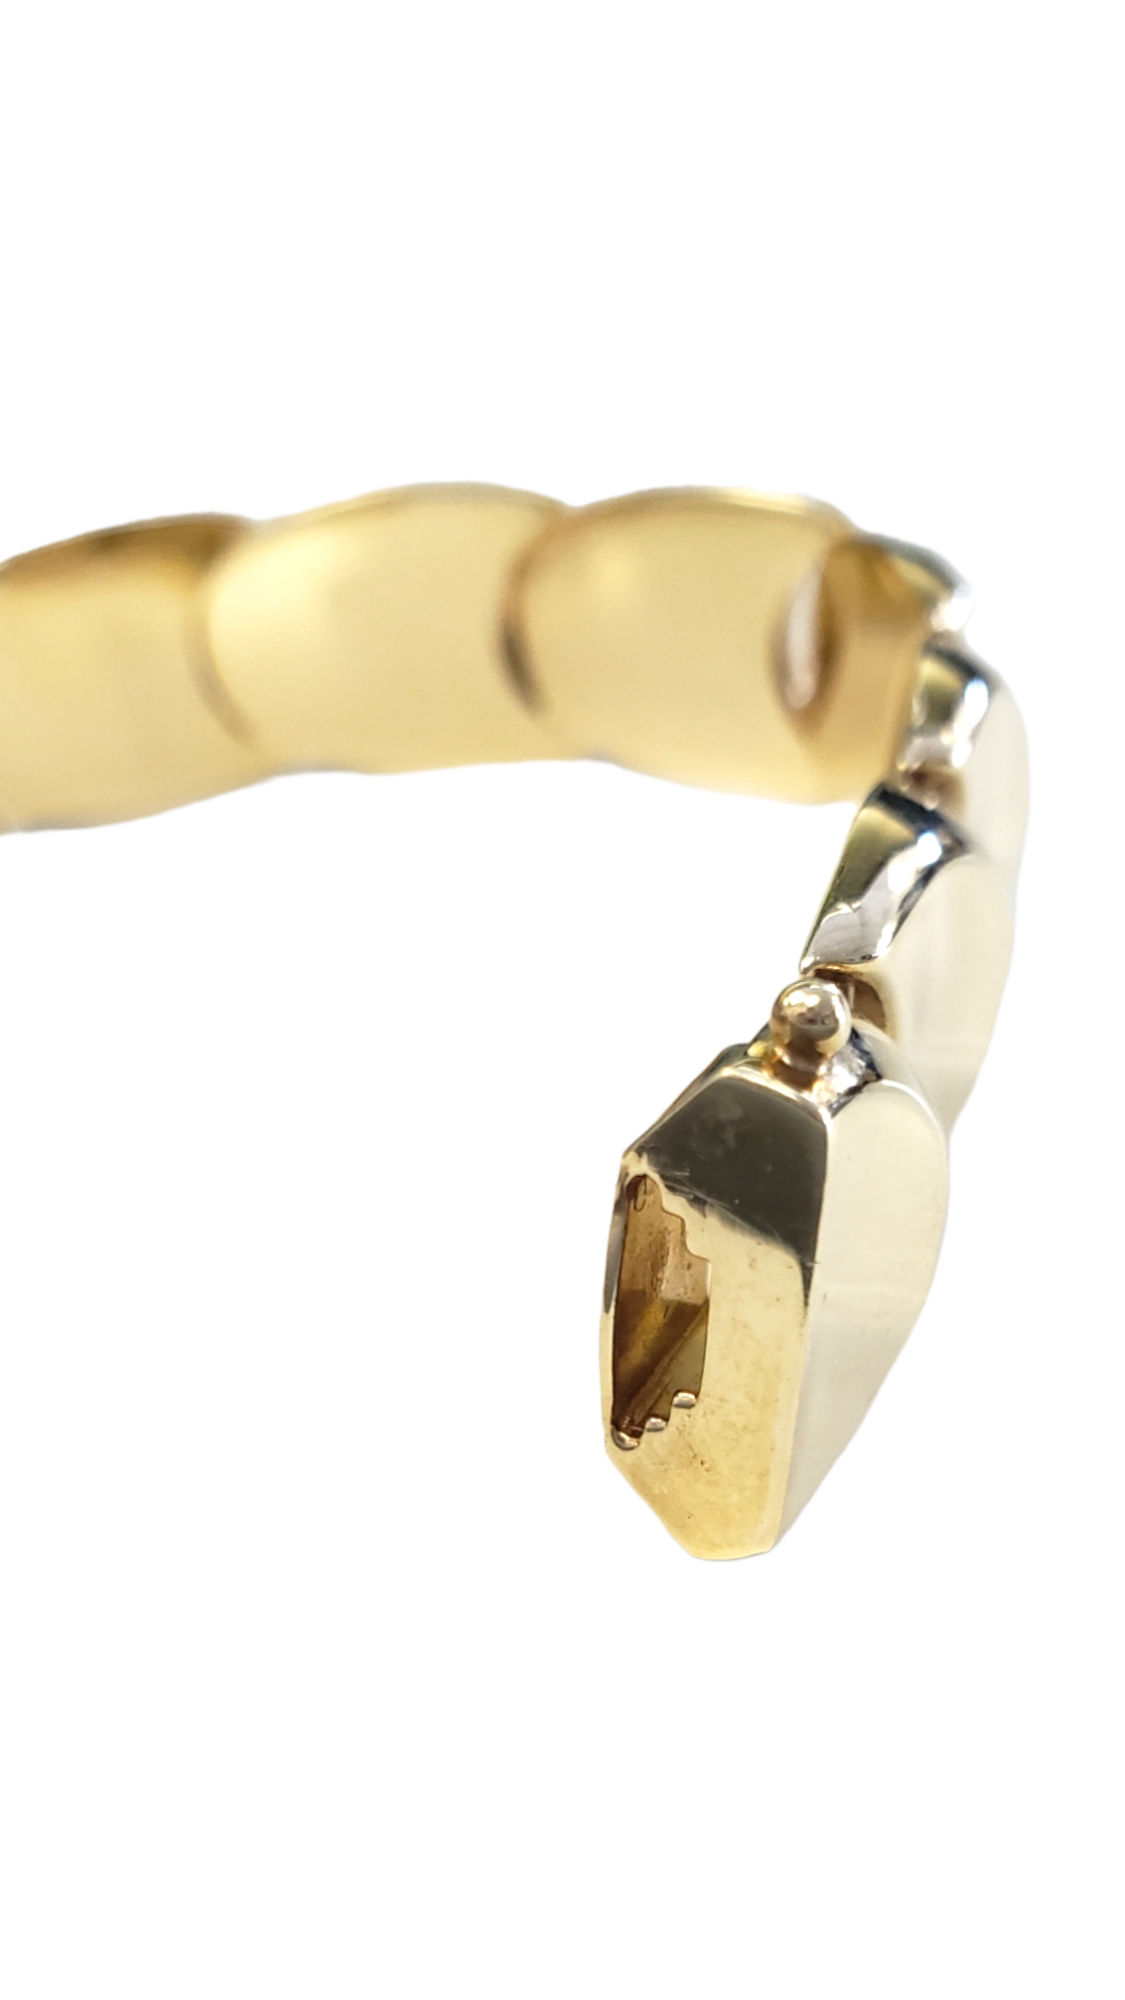 Fancy U-Shaped Link Bracelet made in 14-Karat Yellow Gold